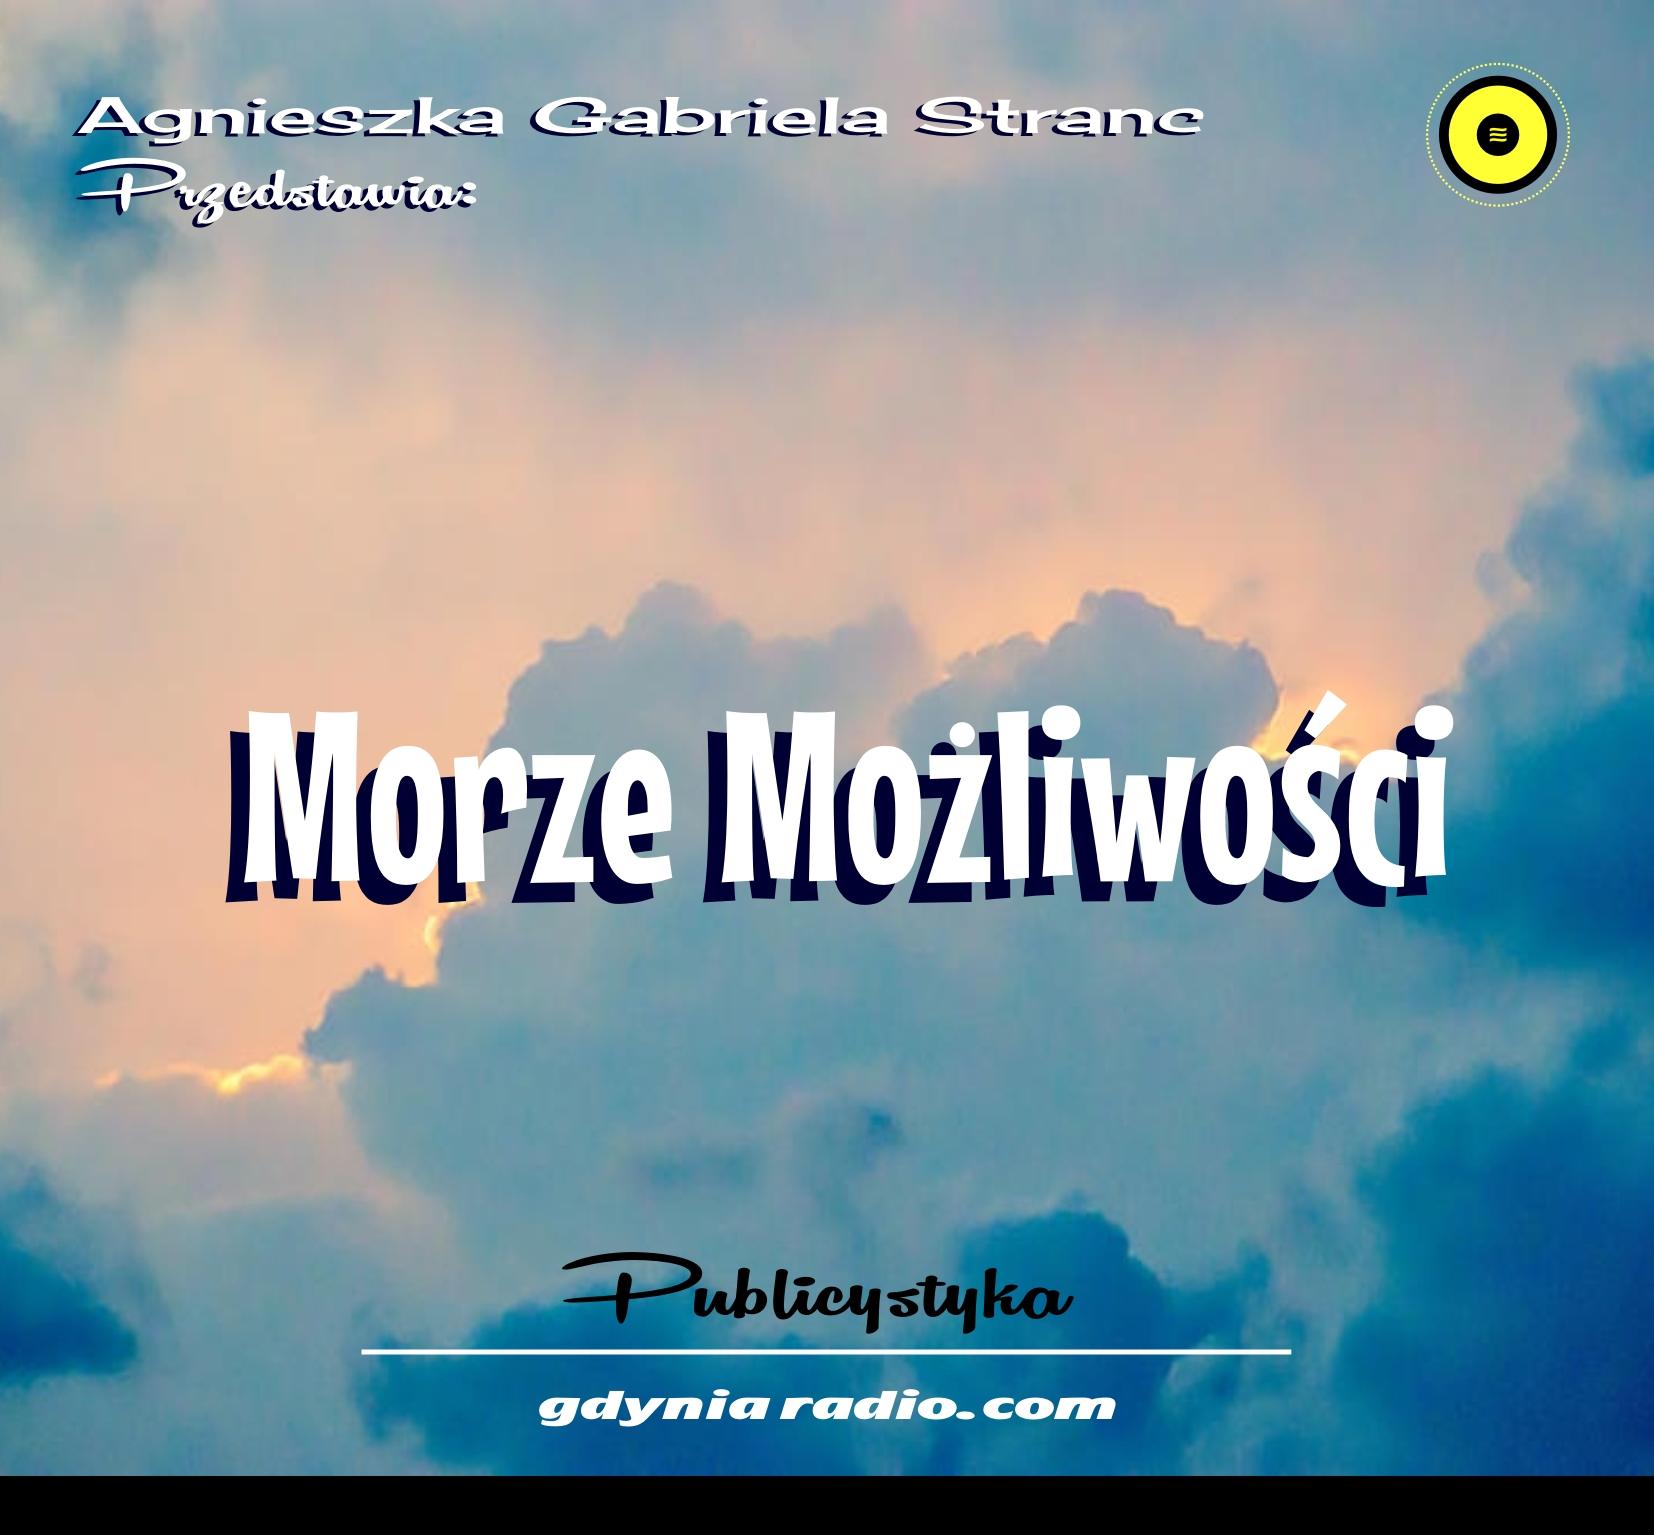 Gdynia Radio 2021 Moze mozliwosci 5 Agnieszka Stranc zzz Home Copy 2020 09 07